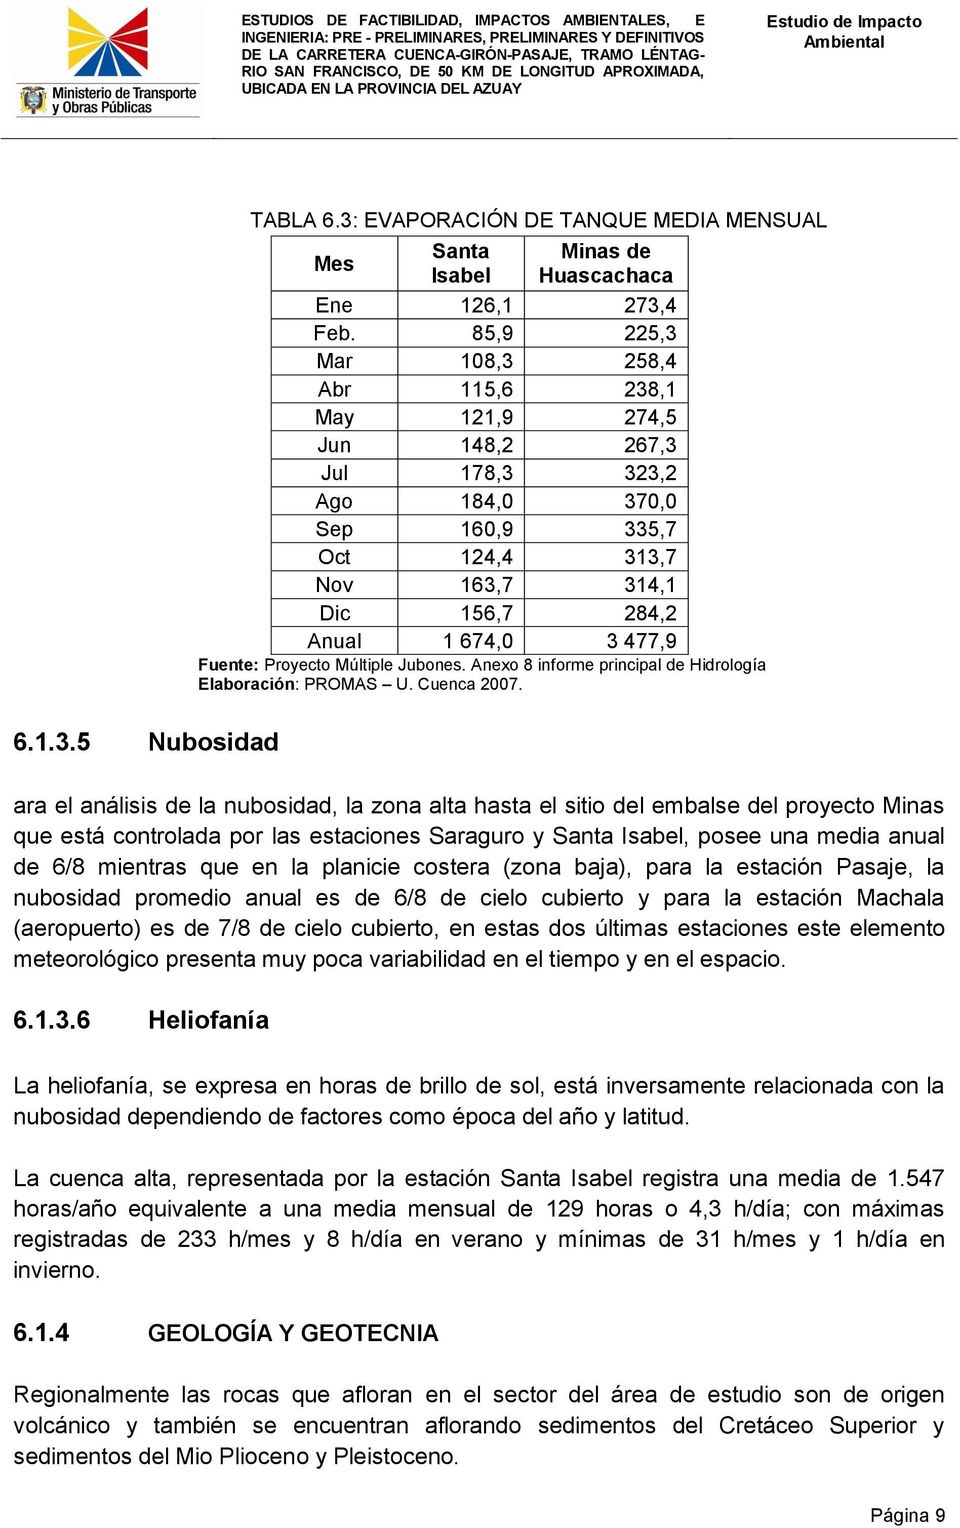 Fuente: Proyecto Múltiple Jubones. Anexo 8 informe principal de Hidrología Elaboración: PROMAS U. Cuenca 2007.